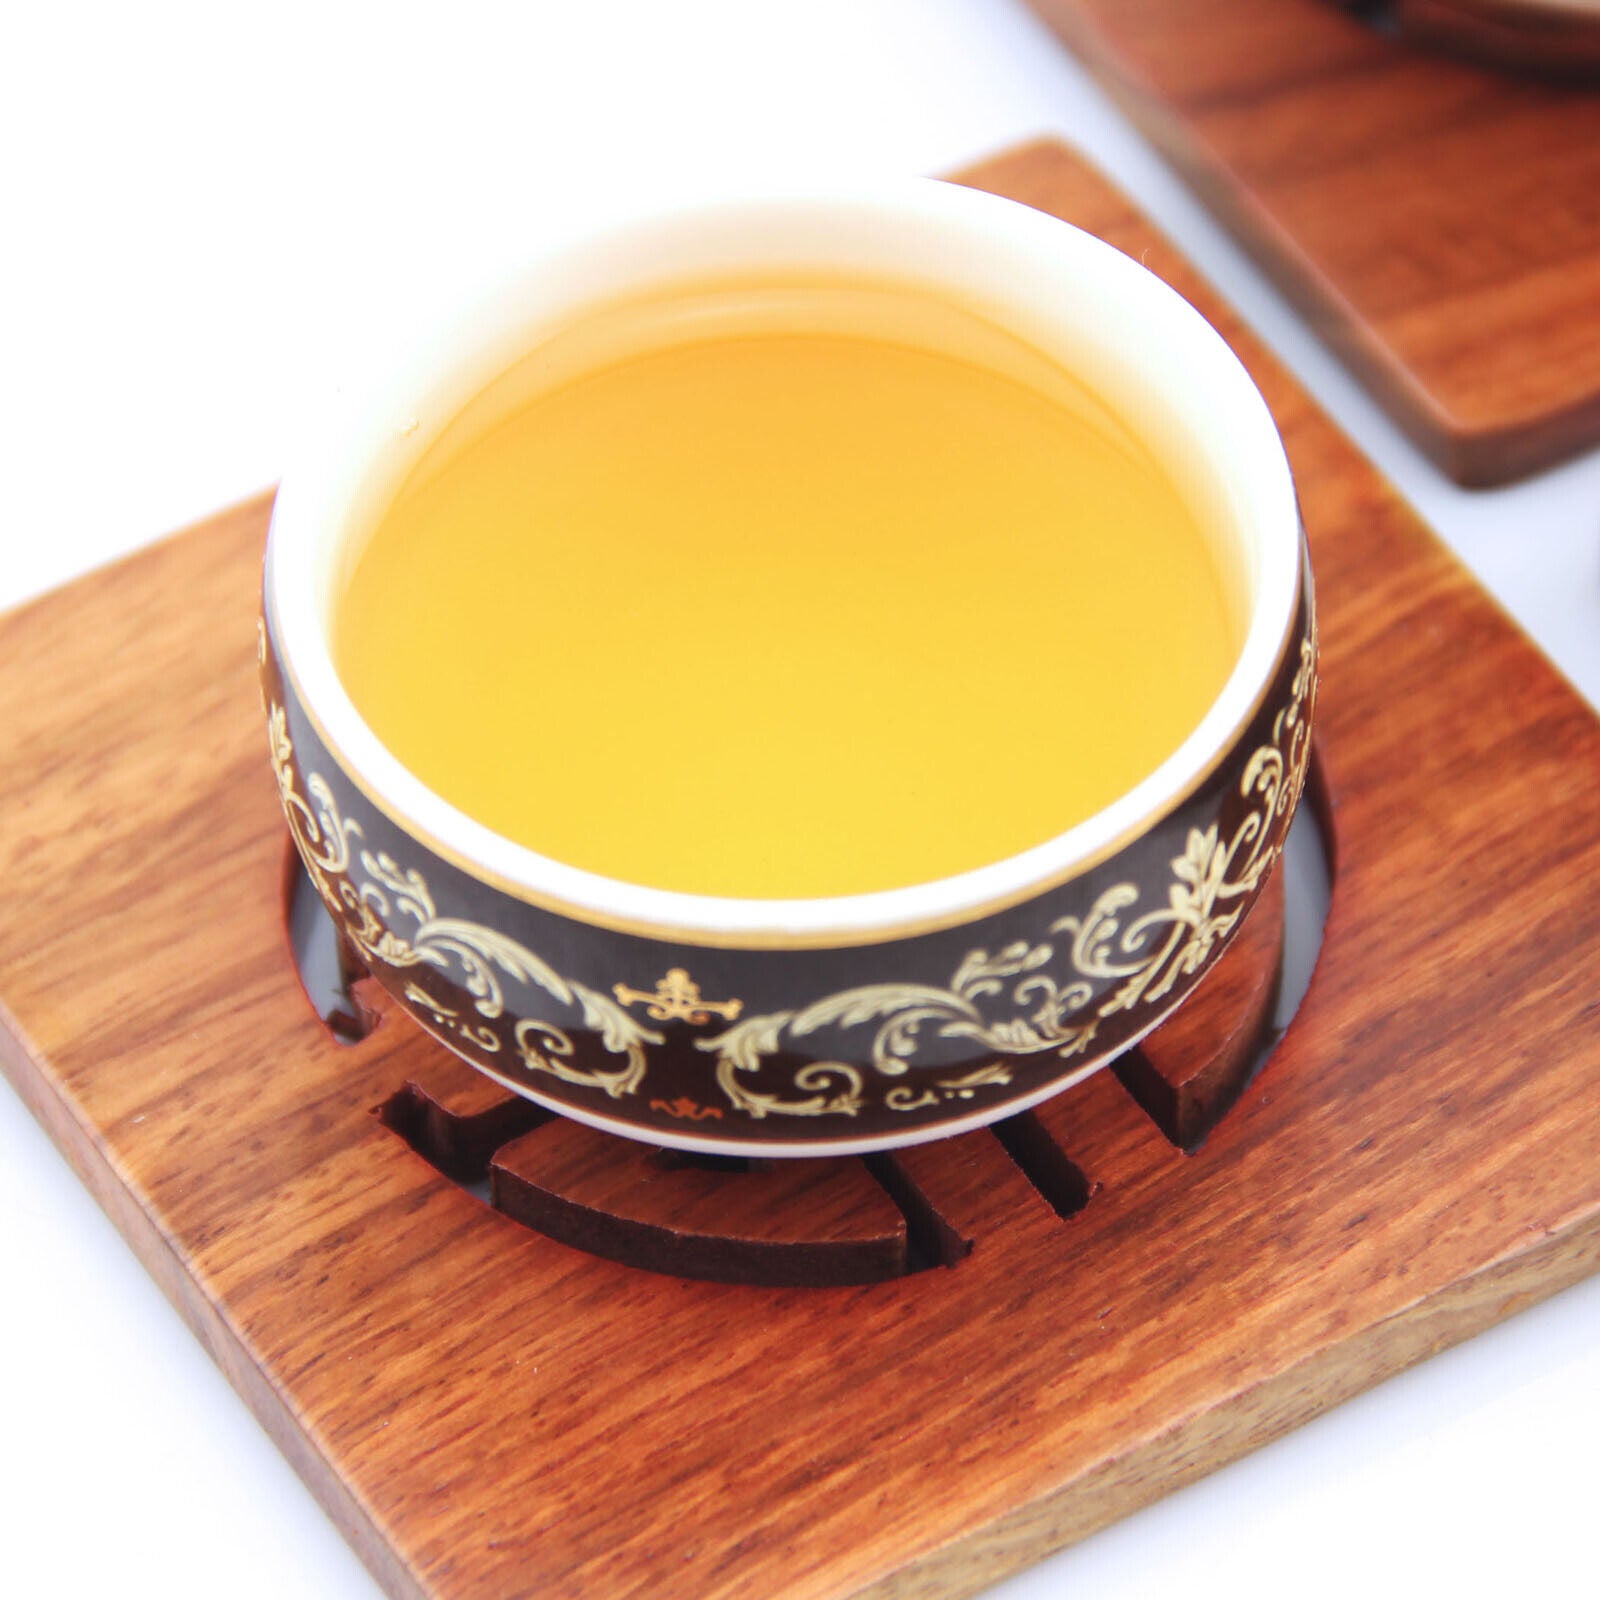 HelloYoung HELLOYOUNG 100g Supreme Silver Needle White Tea Bai hao Yin zhen Chinese Tips